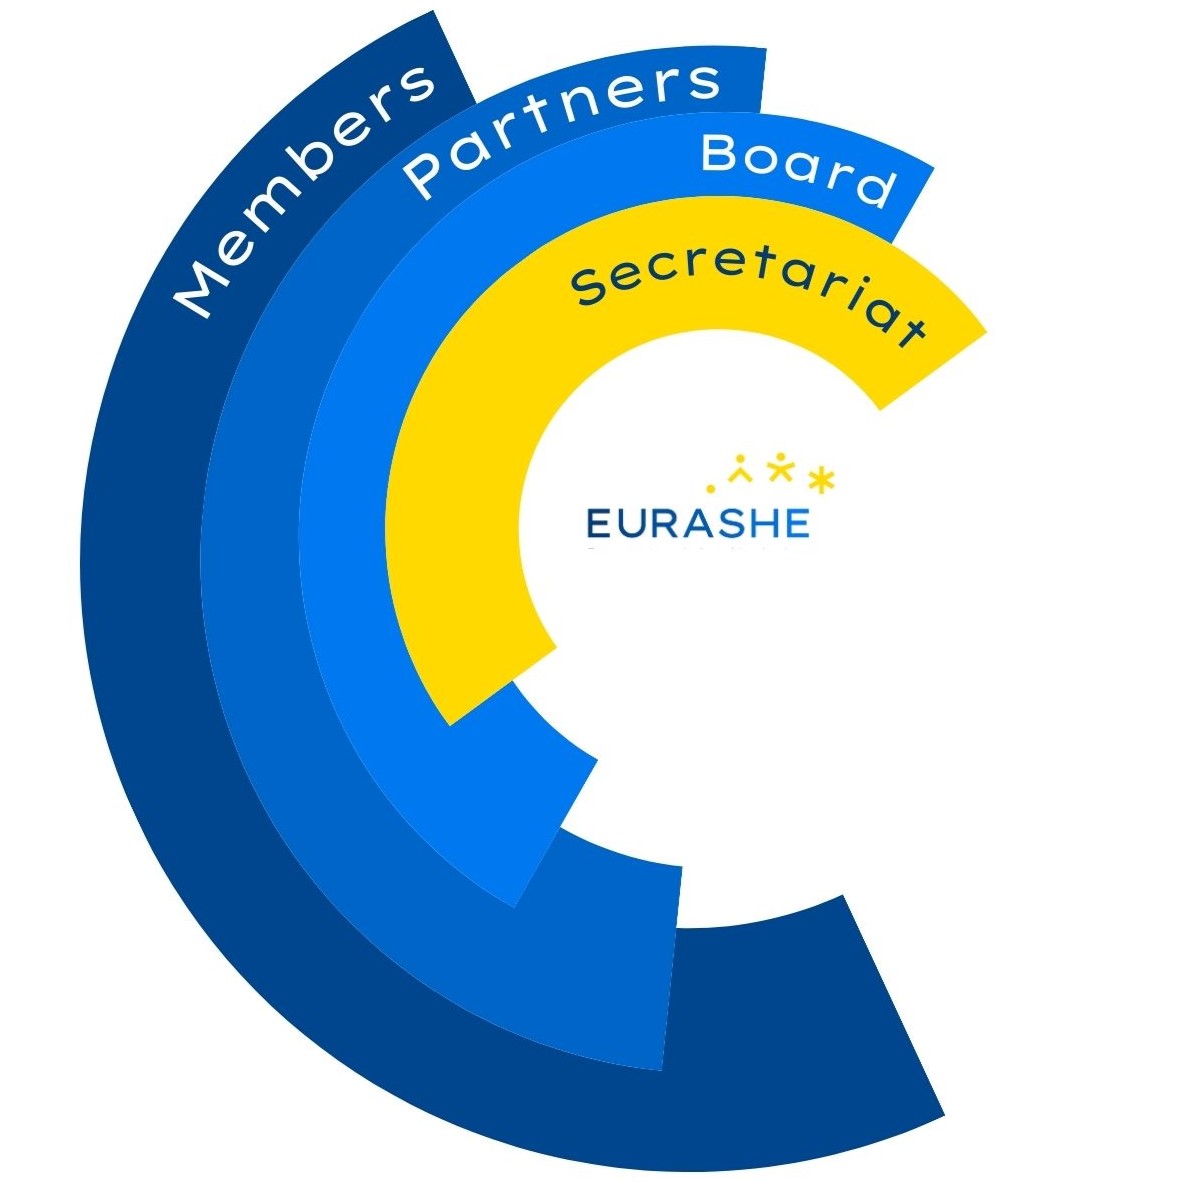 EURASHE organisational chart